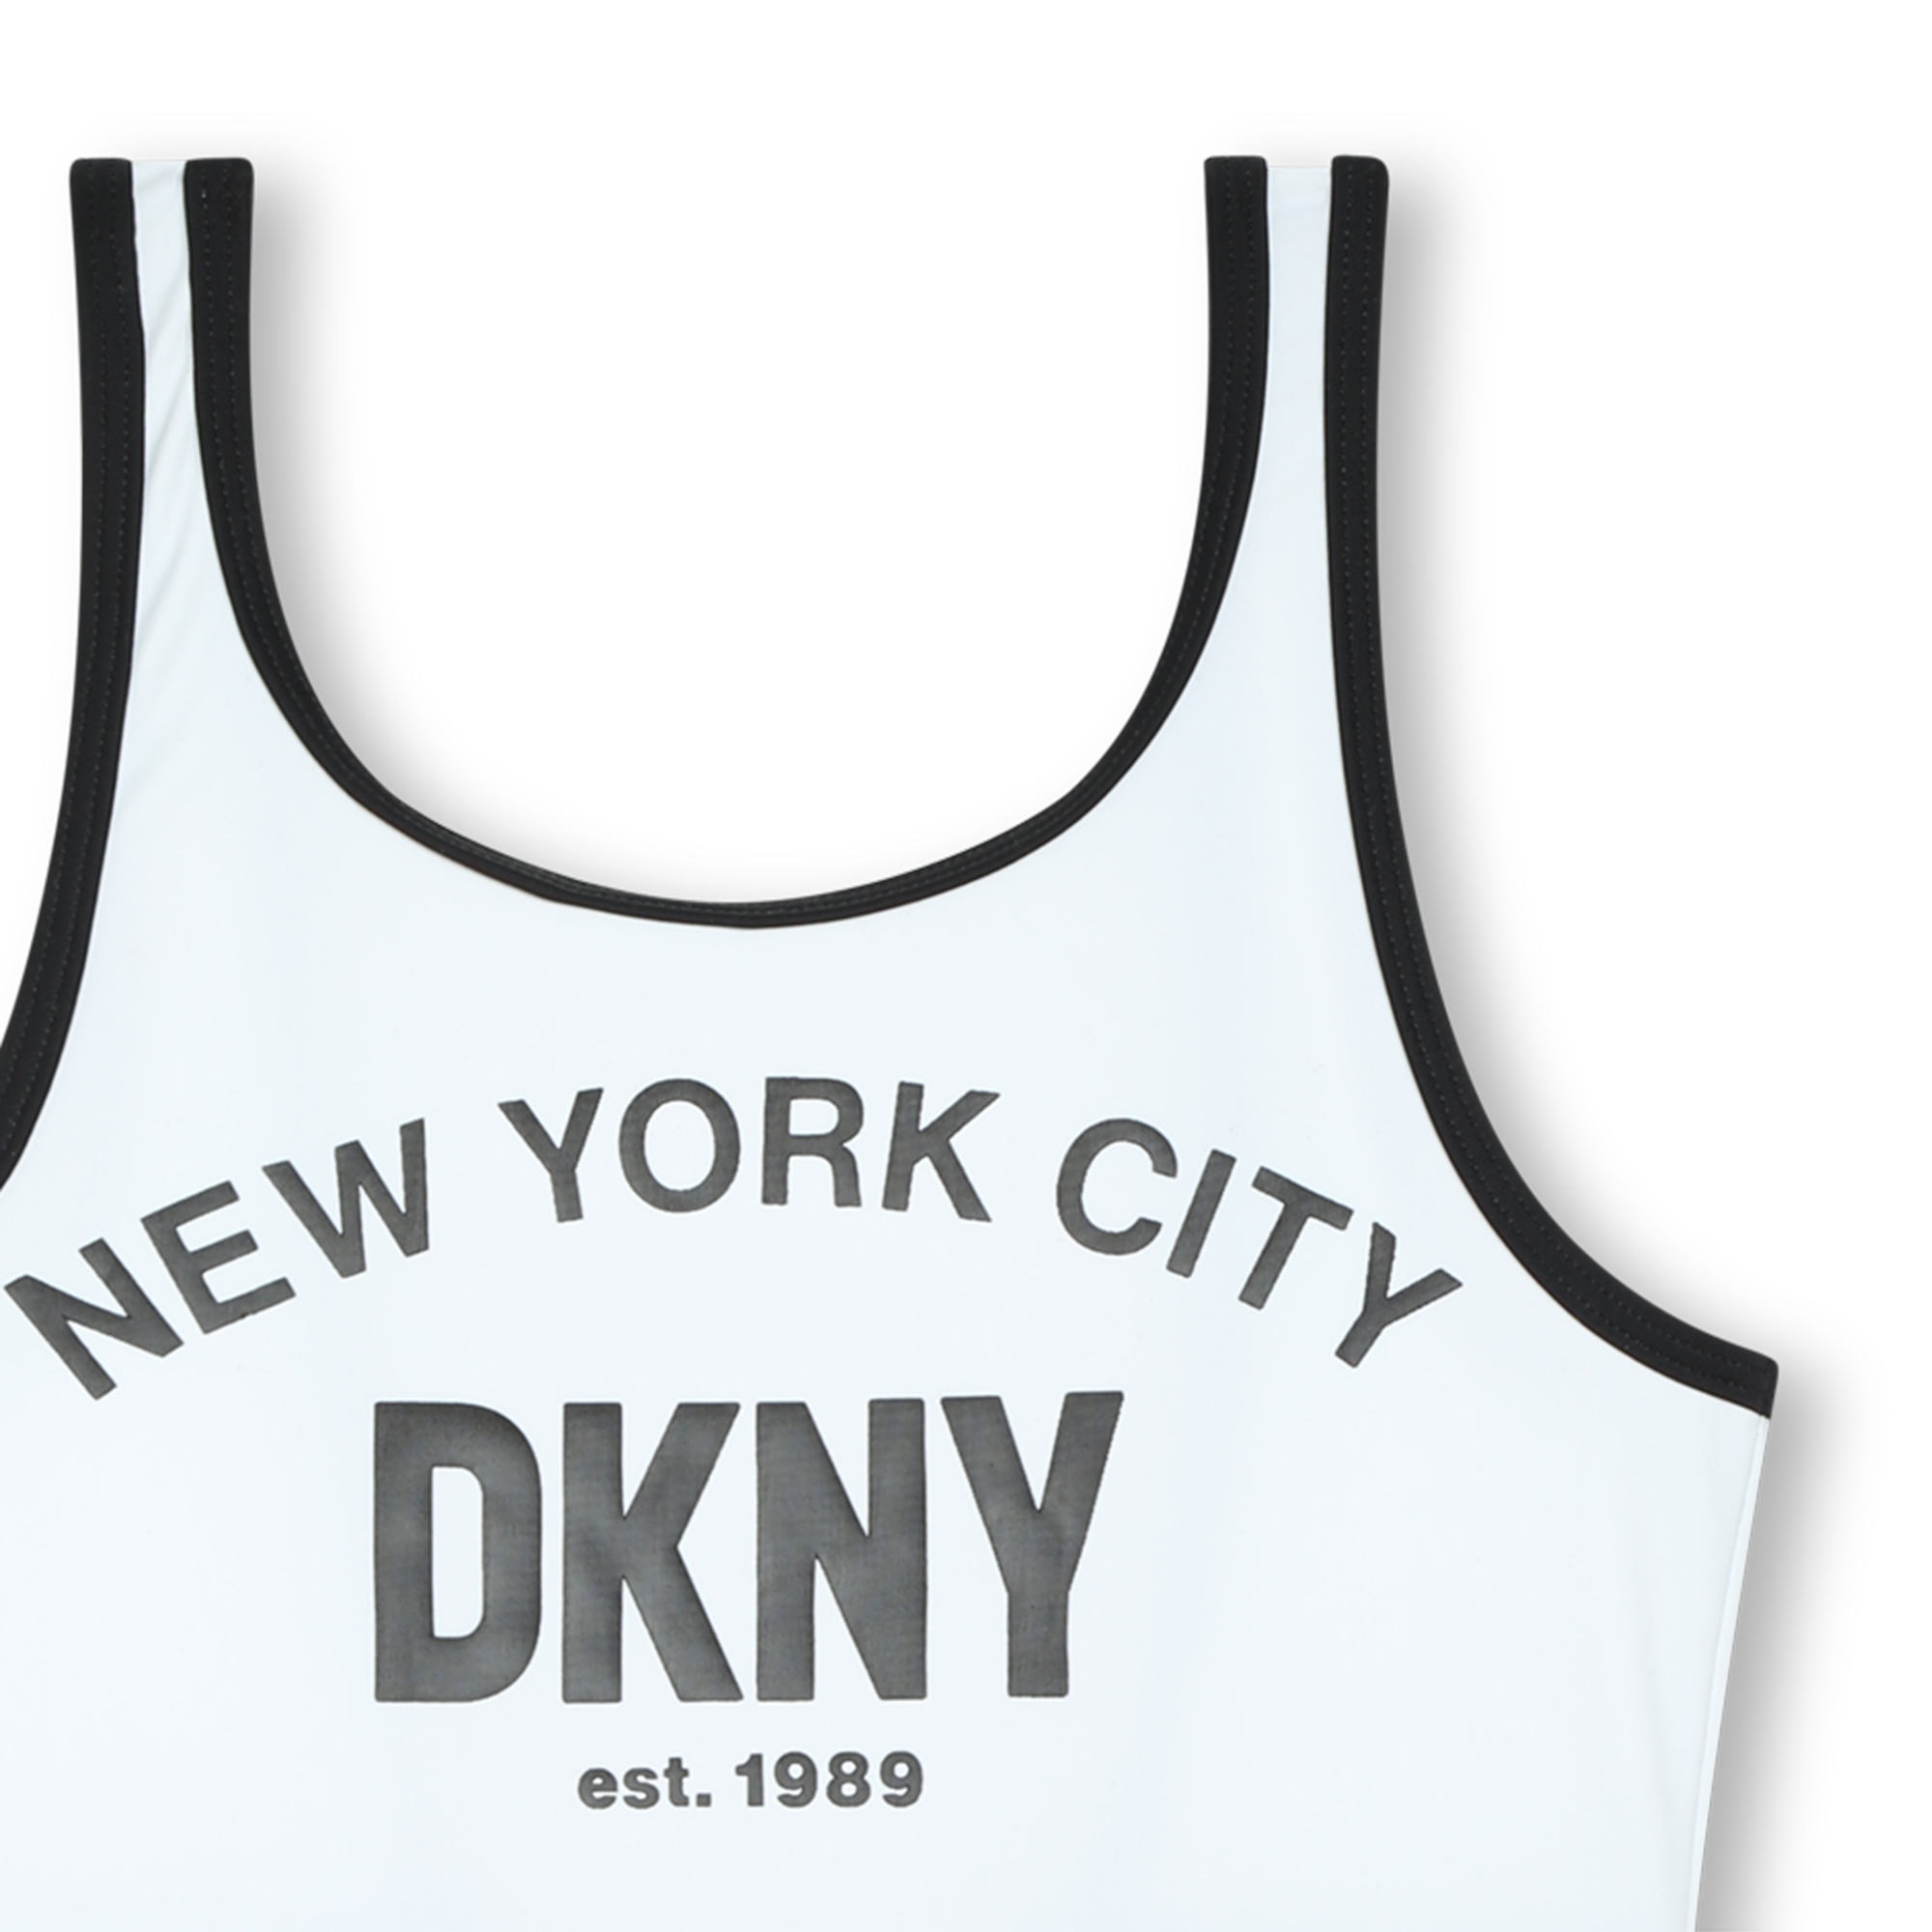 Bañador de 1 pieza DKNY para NIÑA